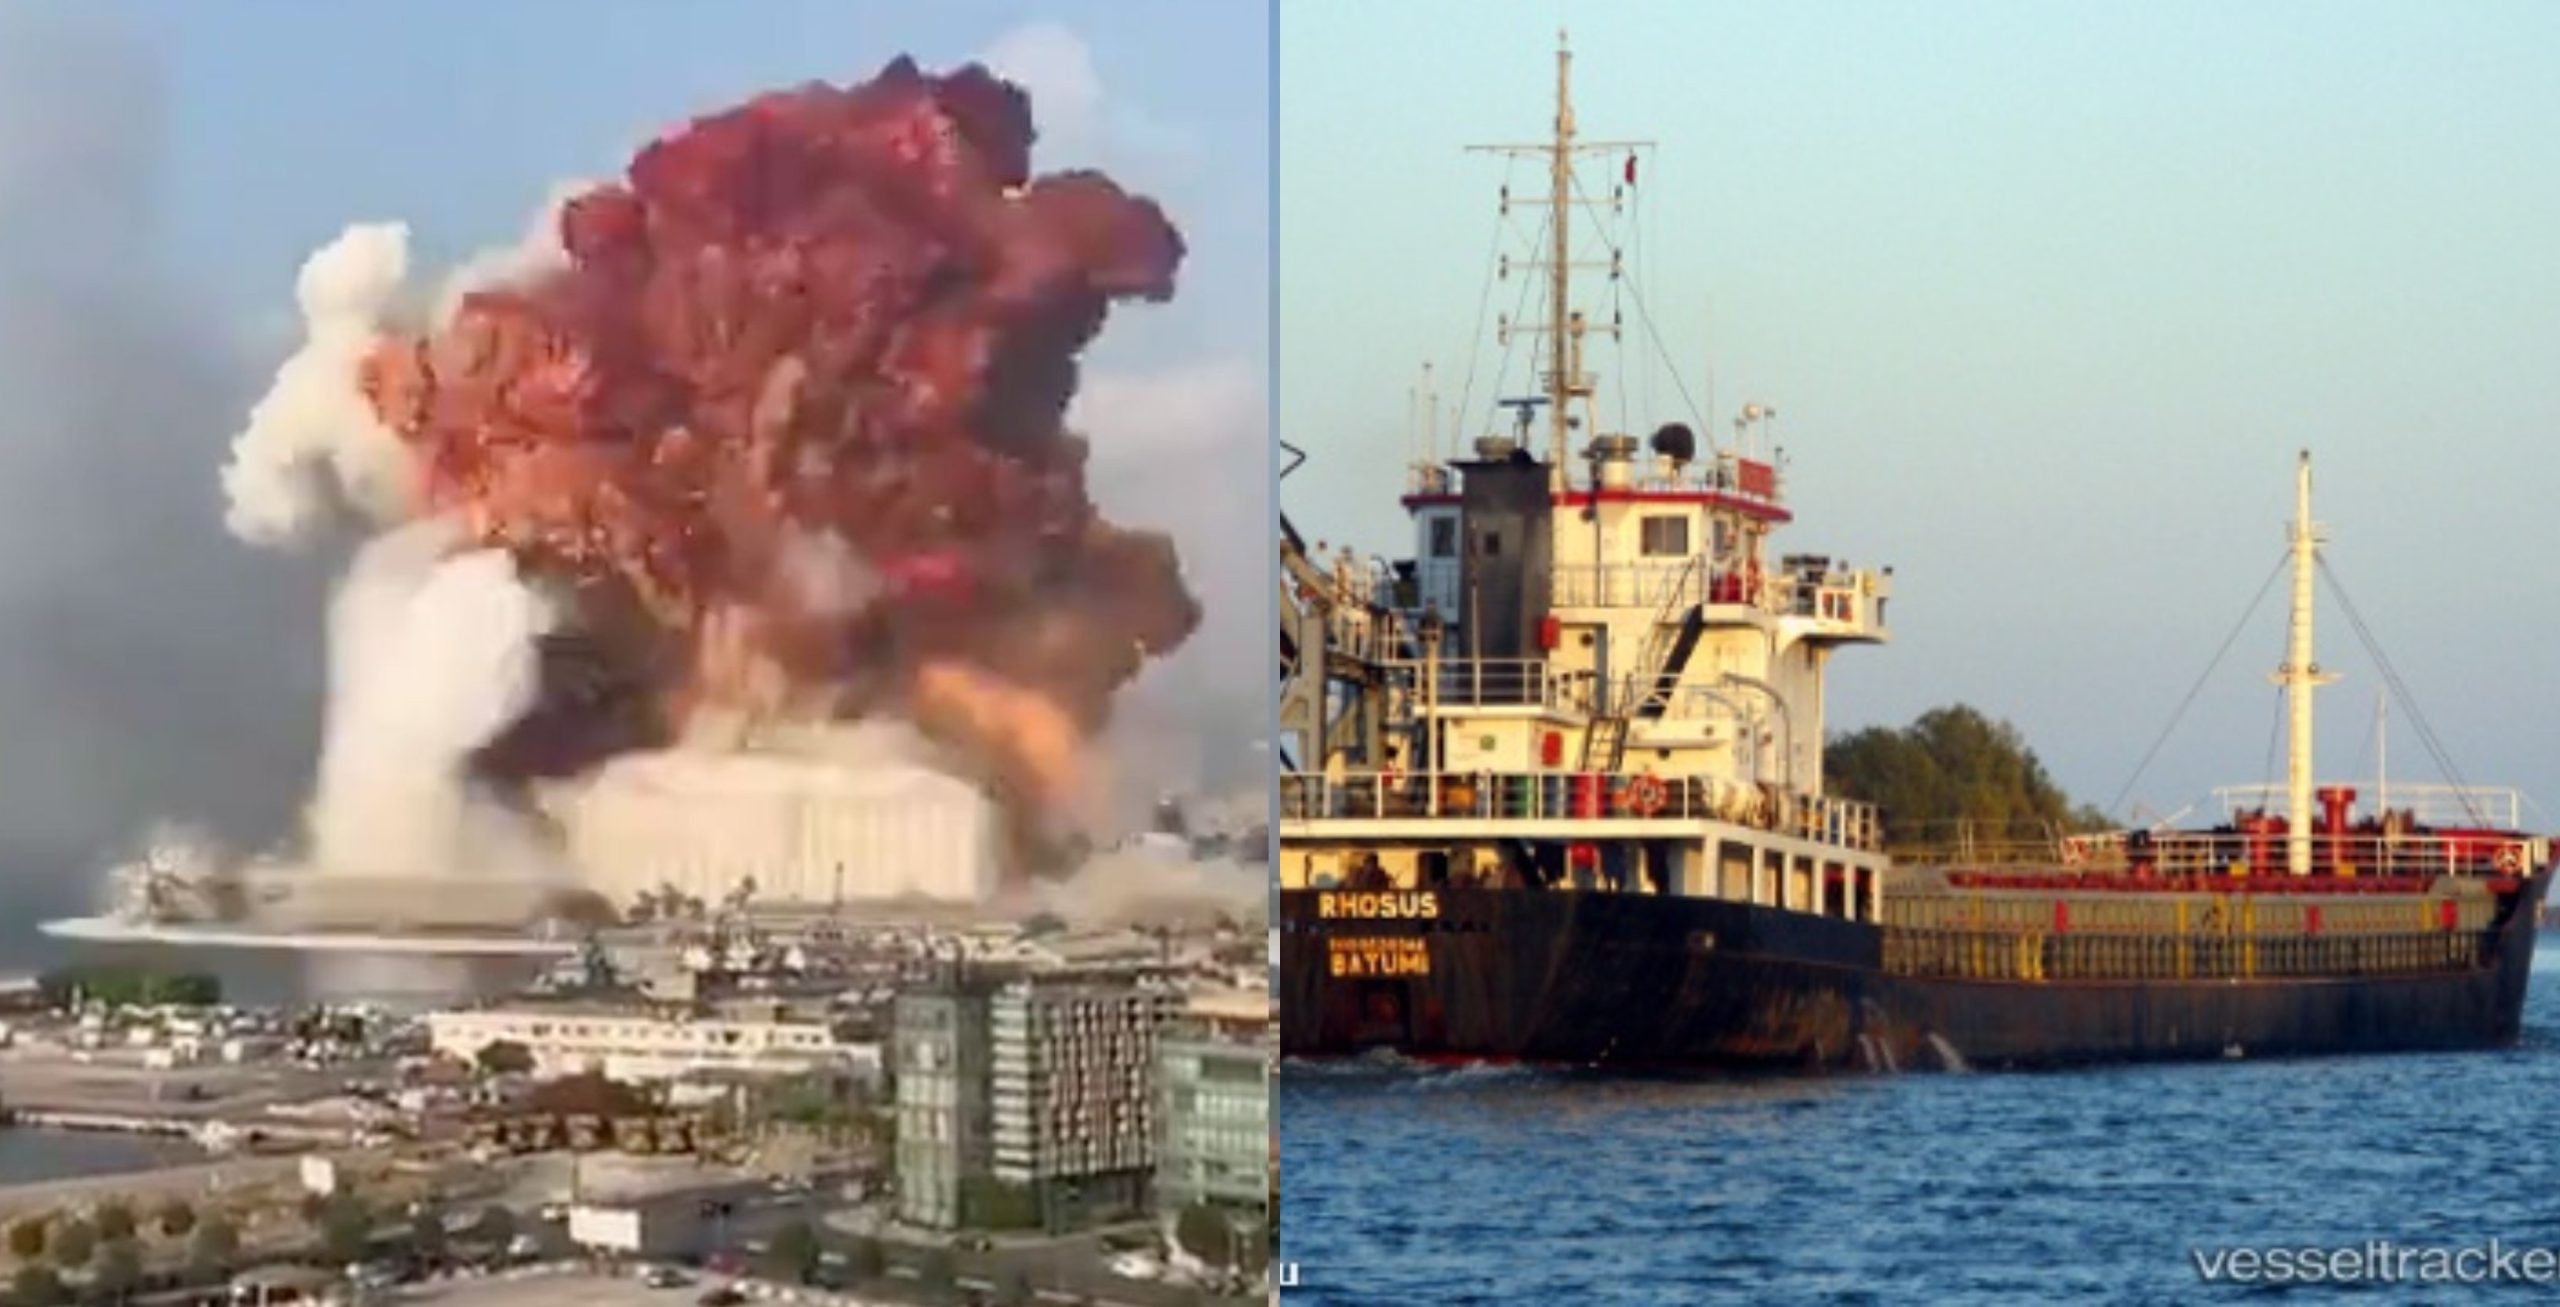  Misterul exploziei care a omorât peste 100 de oameni în Beirut, la câţiva kilometri de Iaşi?